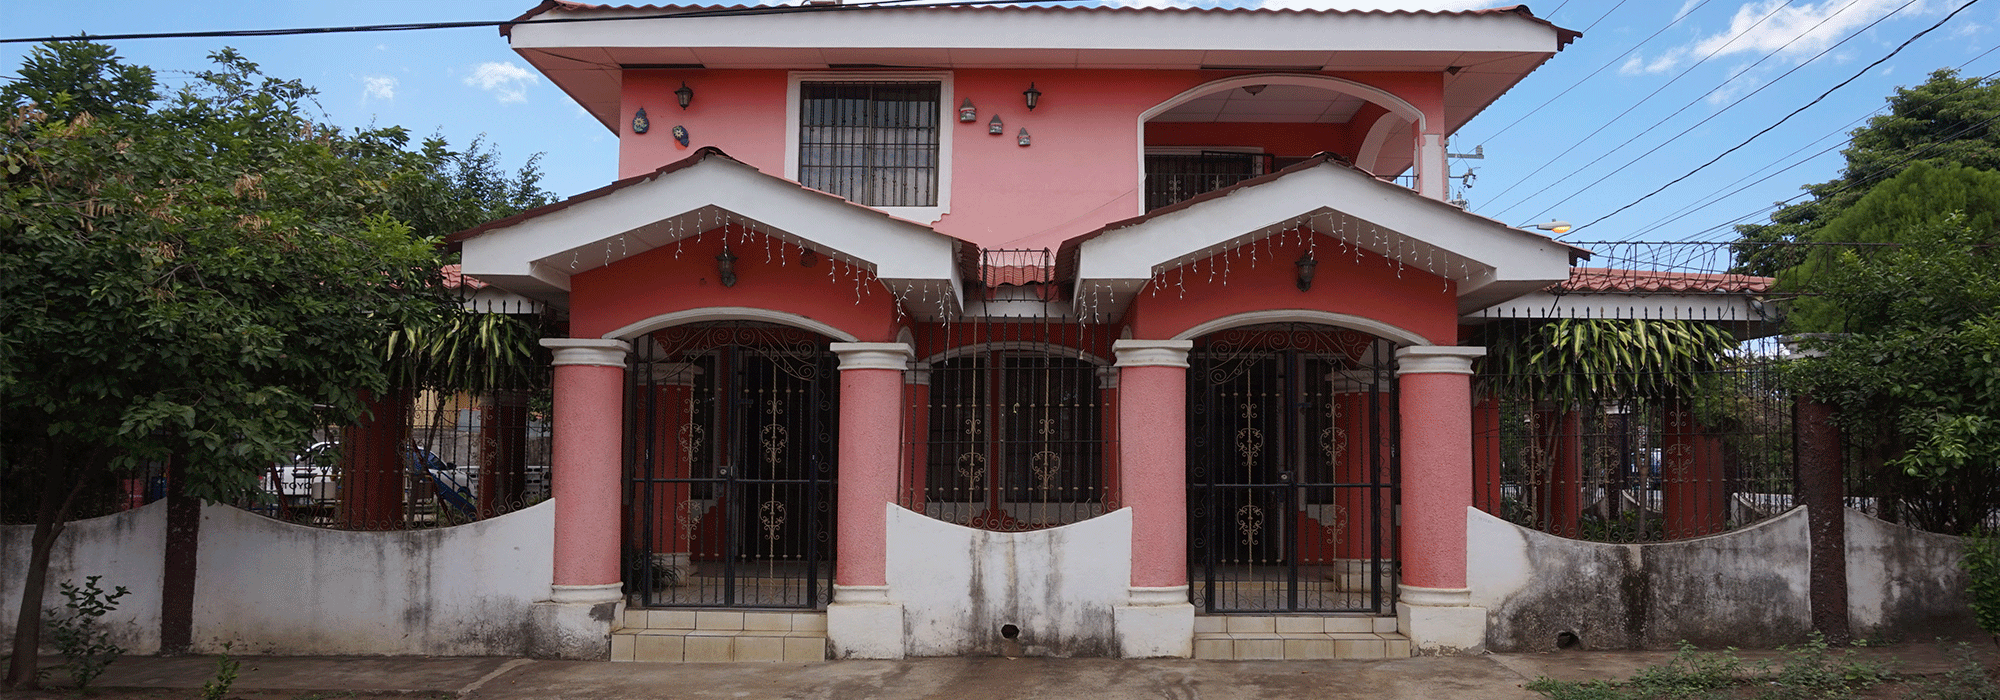 Se vende casa en León, Nicaragua.